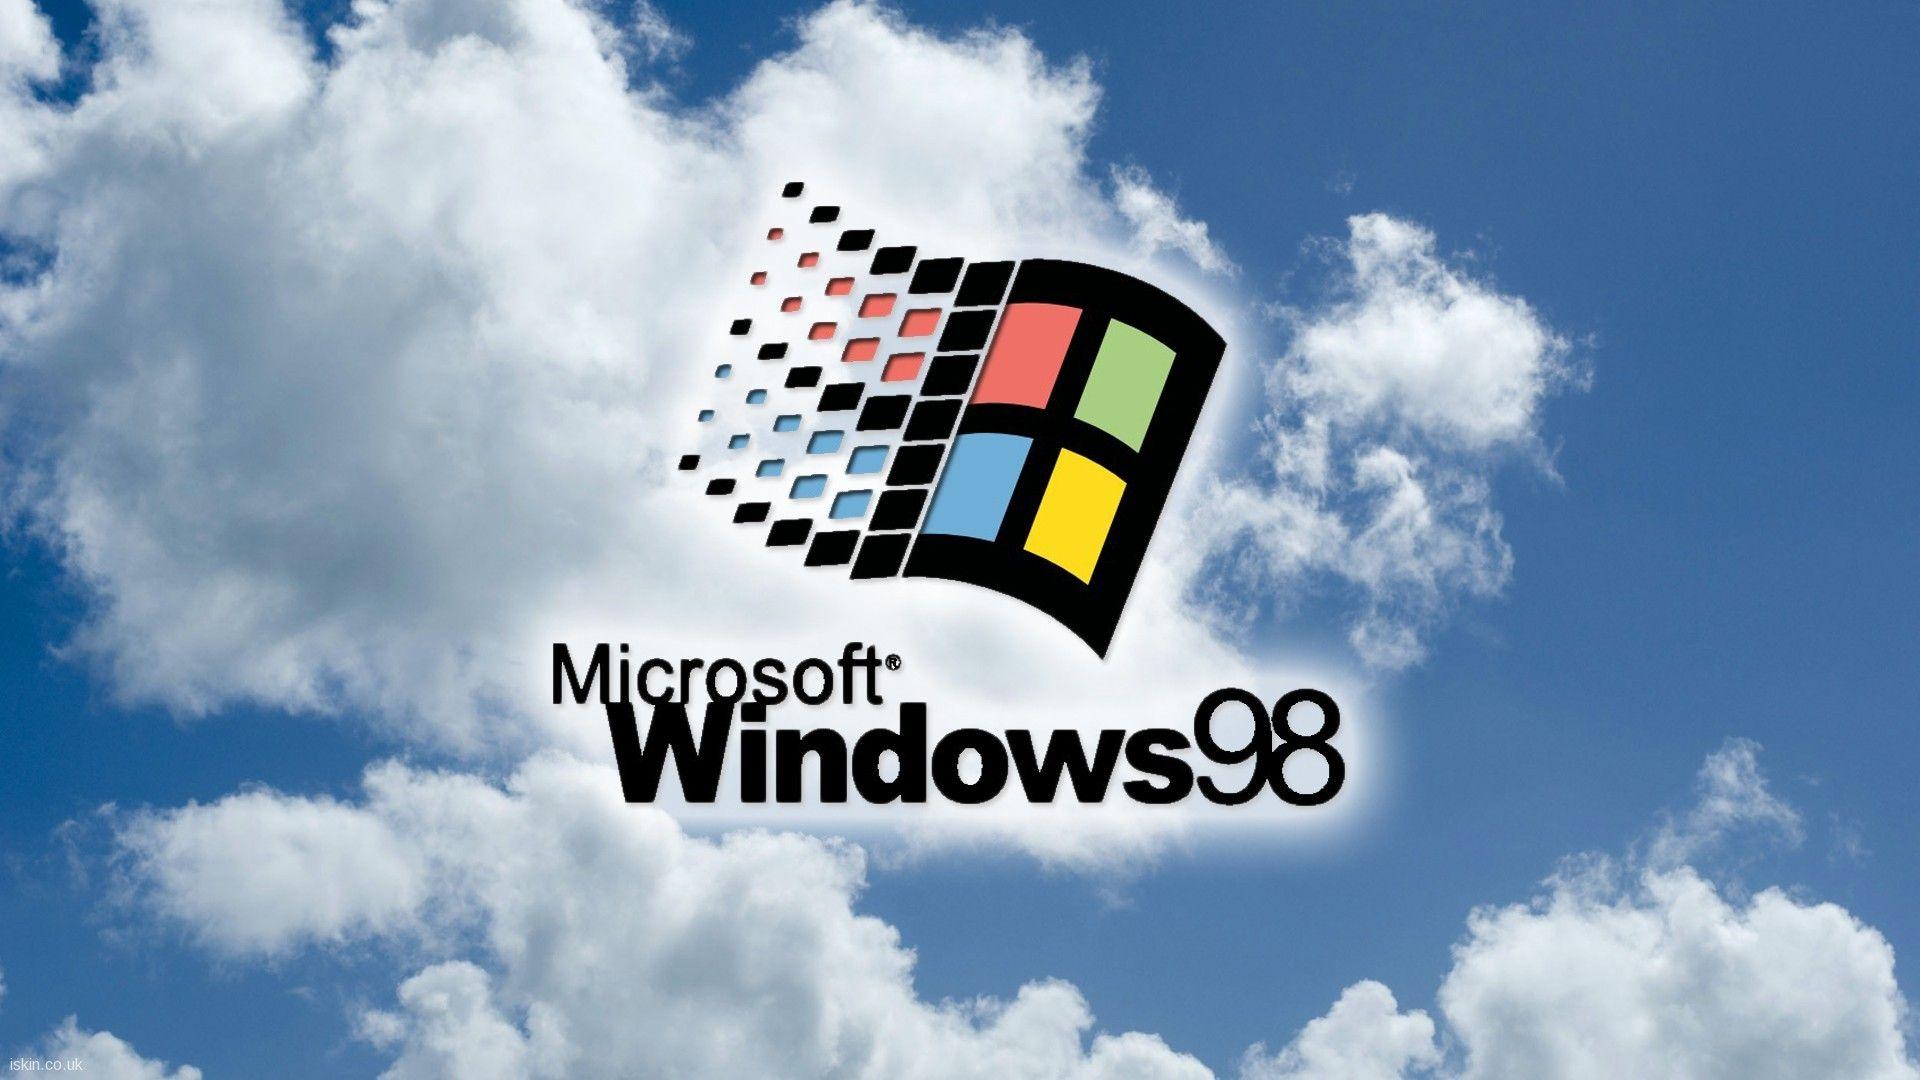 Hãy tận hưởng trải nghiệm trở lại thập niên 90 và cảm nhận sự nổi bật của hình nền Windows độc đáo. Với những hình ảnh được thiết kế chuyên nghiệp và tinh tế, hình nền này sẽ đưa bạn trở lại kỷ nguyên và tạo ra sự kết nối đặc biệt với máy tính của mình.